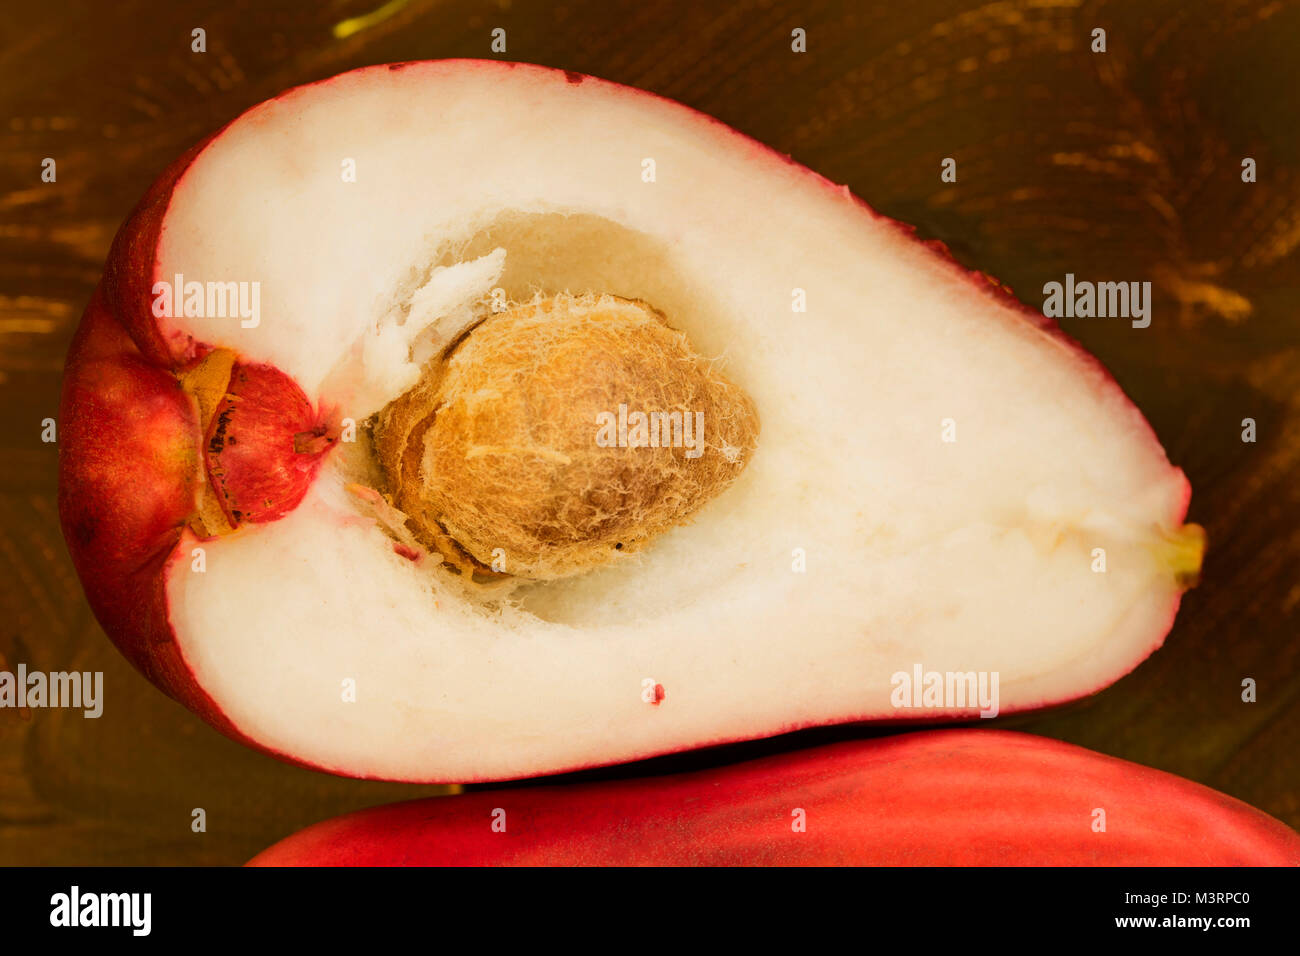 Jamaican Otaheite apple fruit still-life photograph Stock Photo